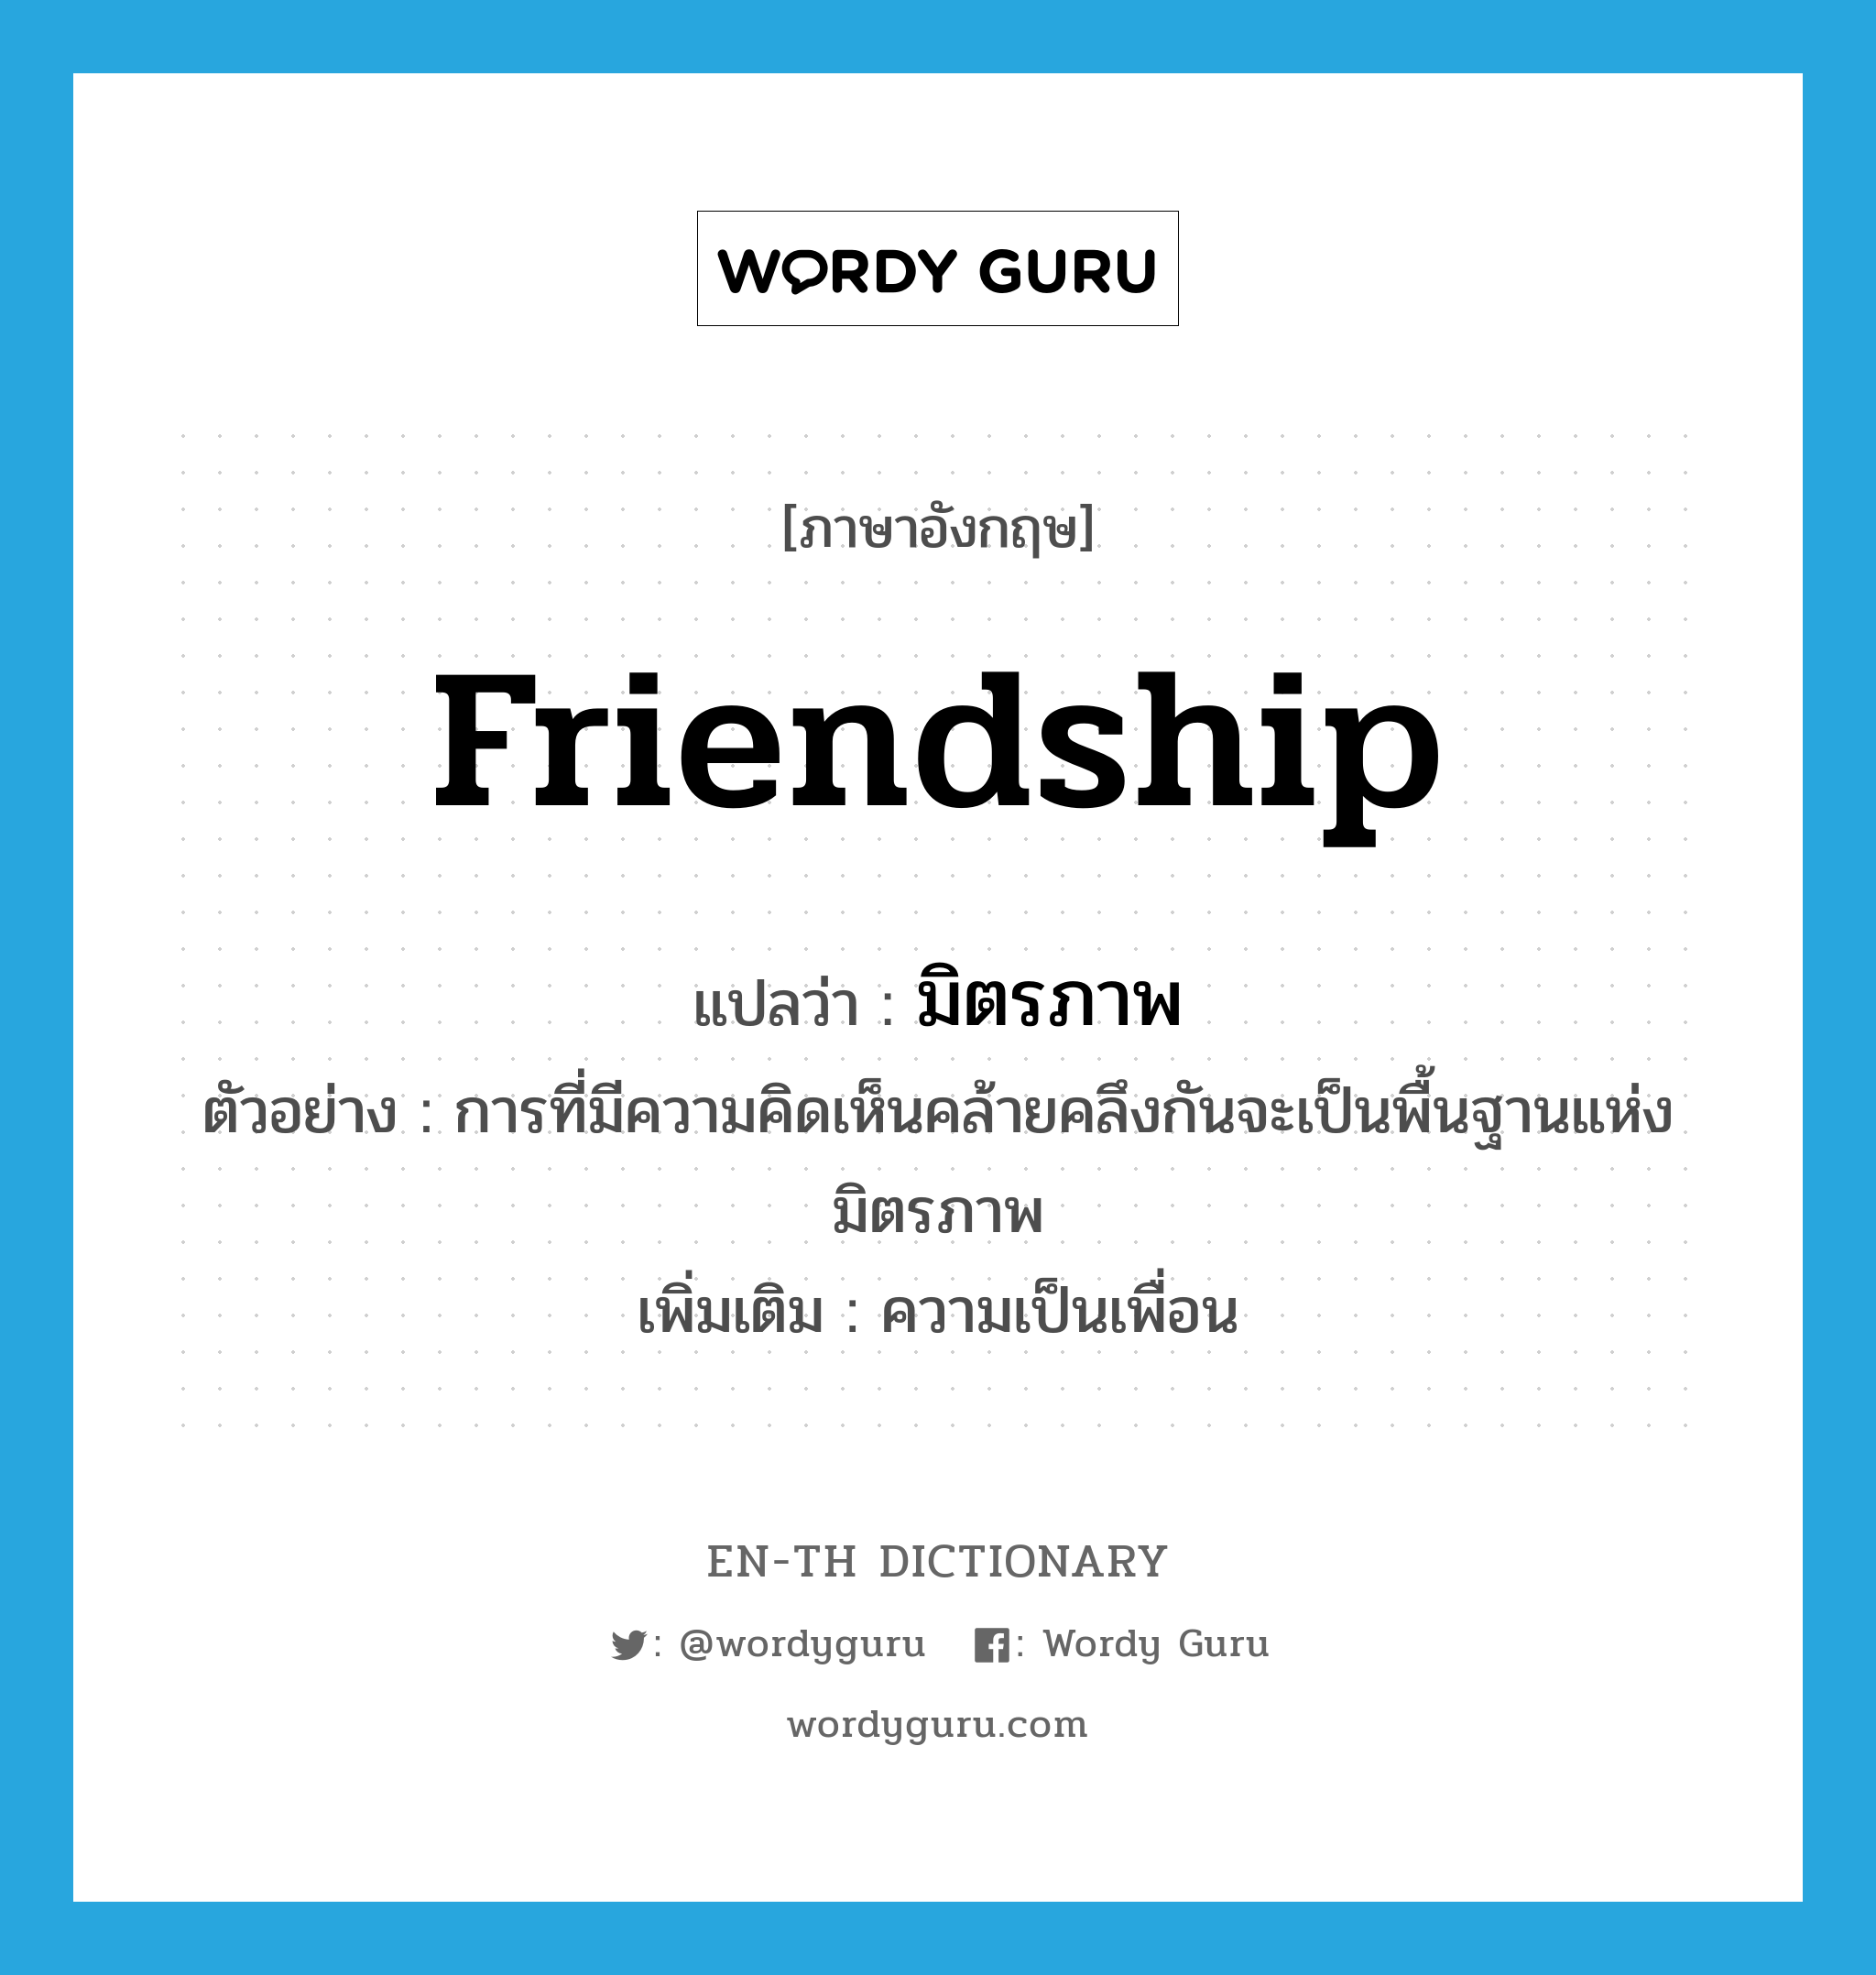 friendship แปลว่า?, คำศัพท์ภาษาอังกฤษ friendship แปลว่า มิตรภาพ ประเภท N ตัวอย่าง การที่มีความคิดเห็นคล้ายคลึงกันจะเป็นพื้นฐานแห่งมิตรภาพ เพิ่มเติม ความเป็นเพื่อน หมวด N